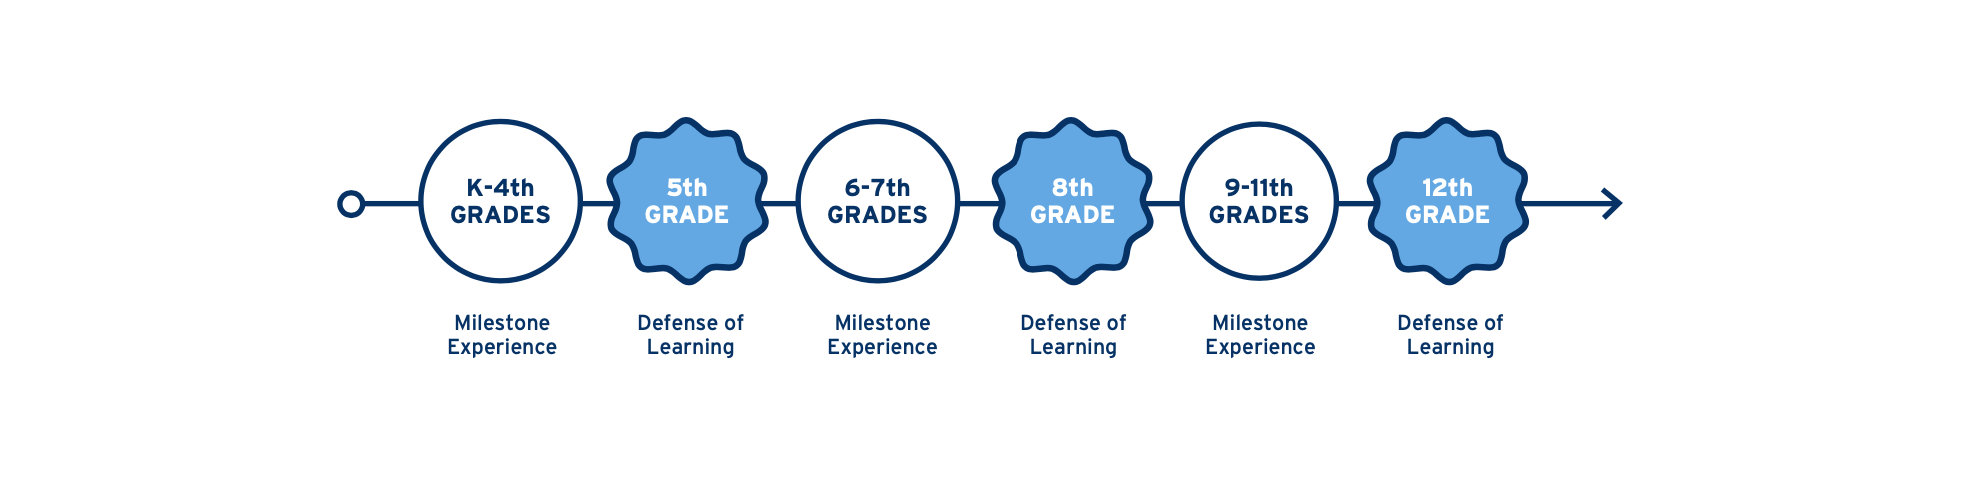 K-4th Grades (Milestone Experience), 5th Grade (Defense of Learning), 6-7th Grades (Milestone Experience), 8th Grade (Defense of Learning), 9-11th Grades (Milestone Experience), 12th Grade (Defense of Learning)